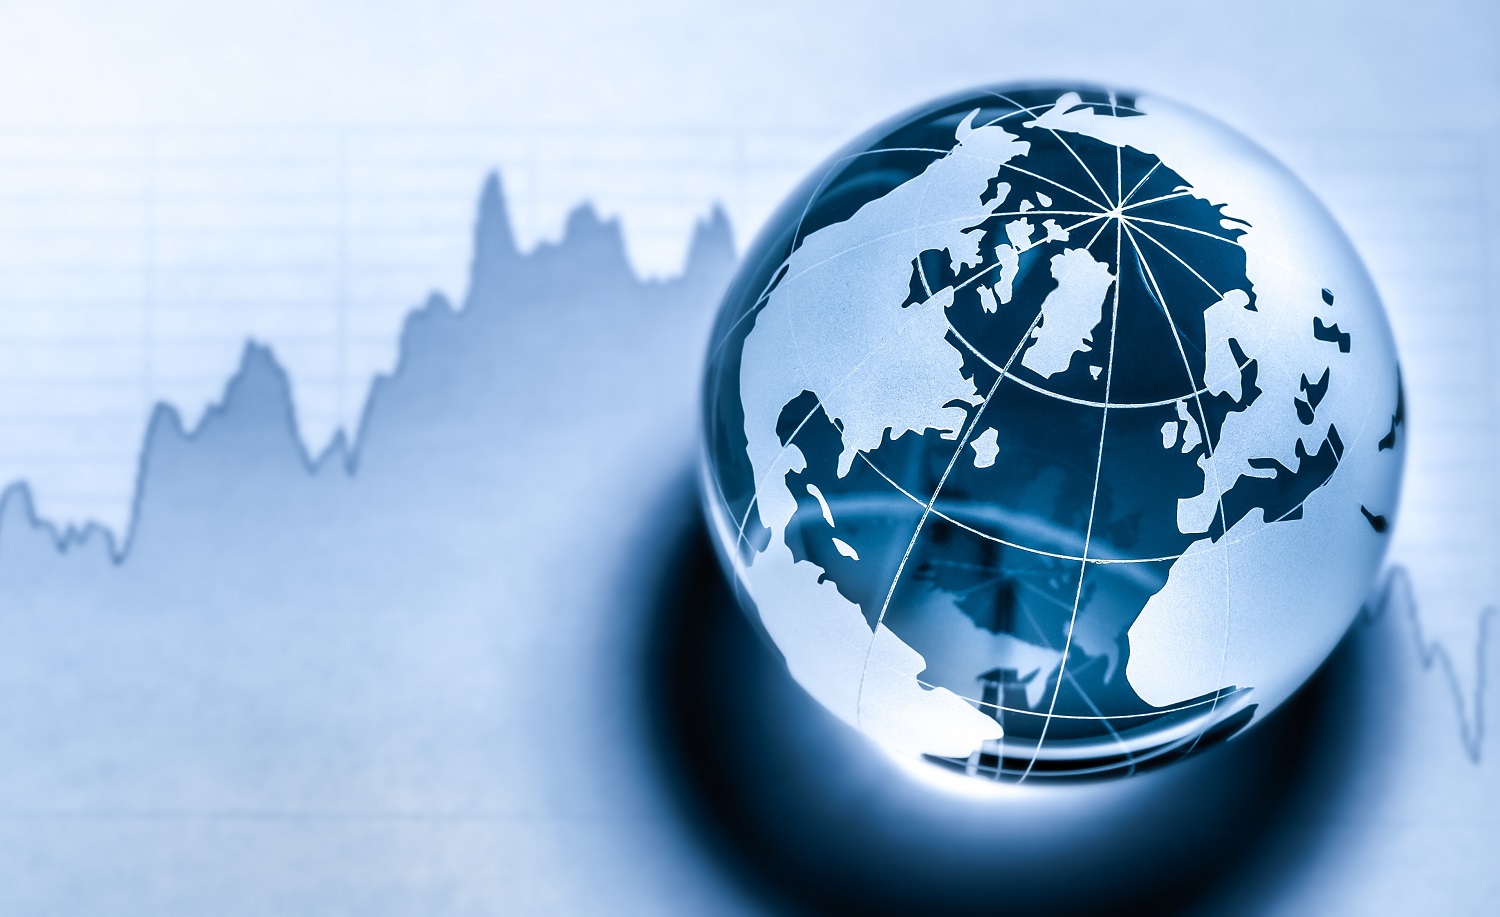 Image of globe on stock market